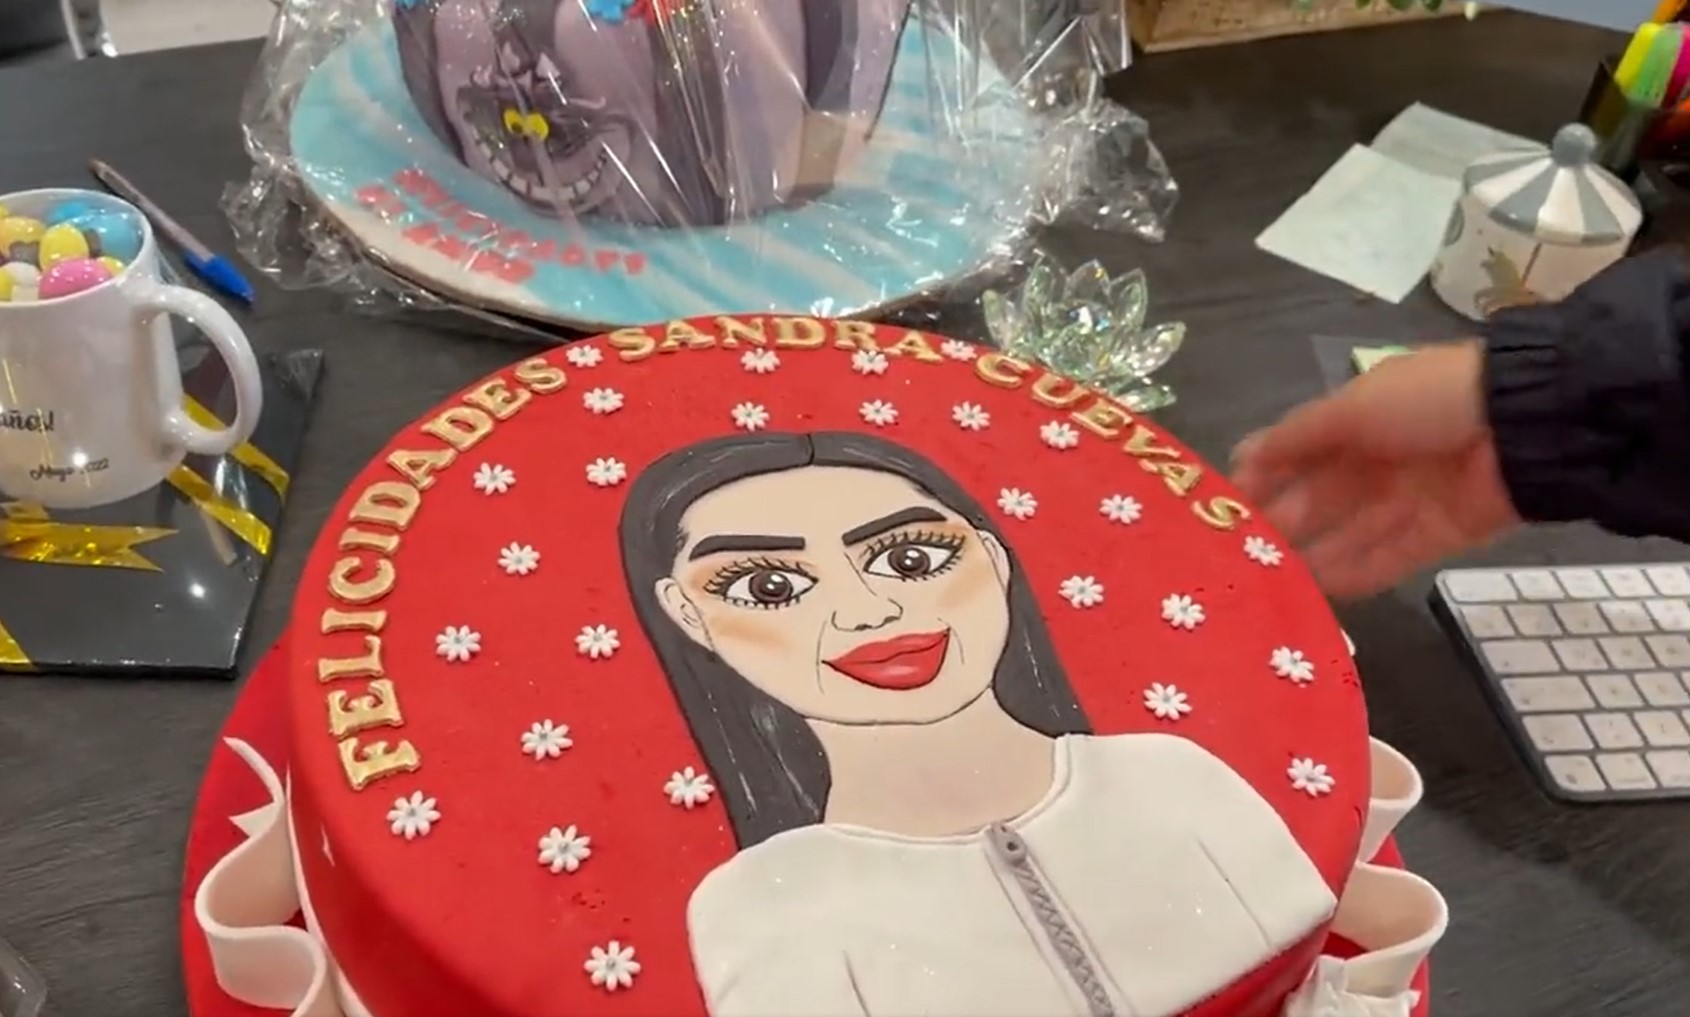 Sandra Cuevas enseñó el pastel de cumpleaños que le mandaron. Capturas: Twitter @SandraCuevas_